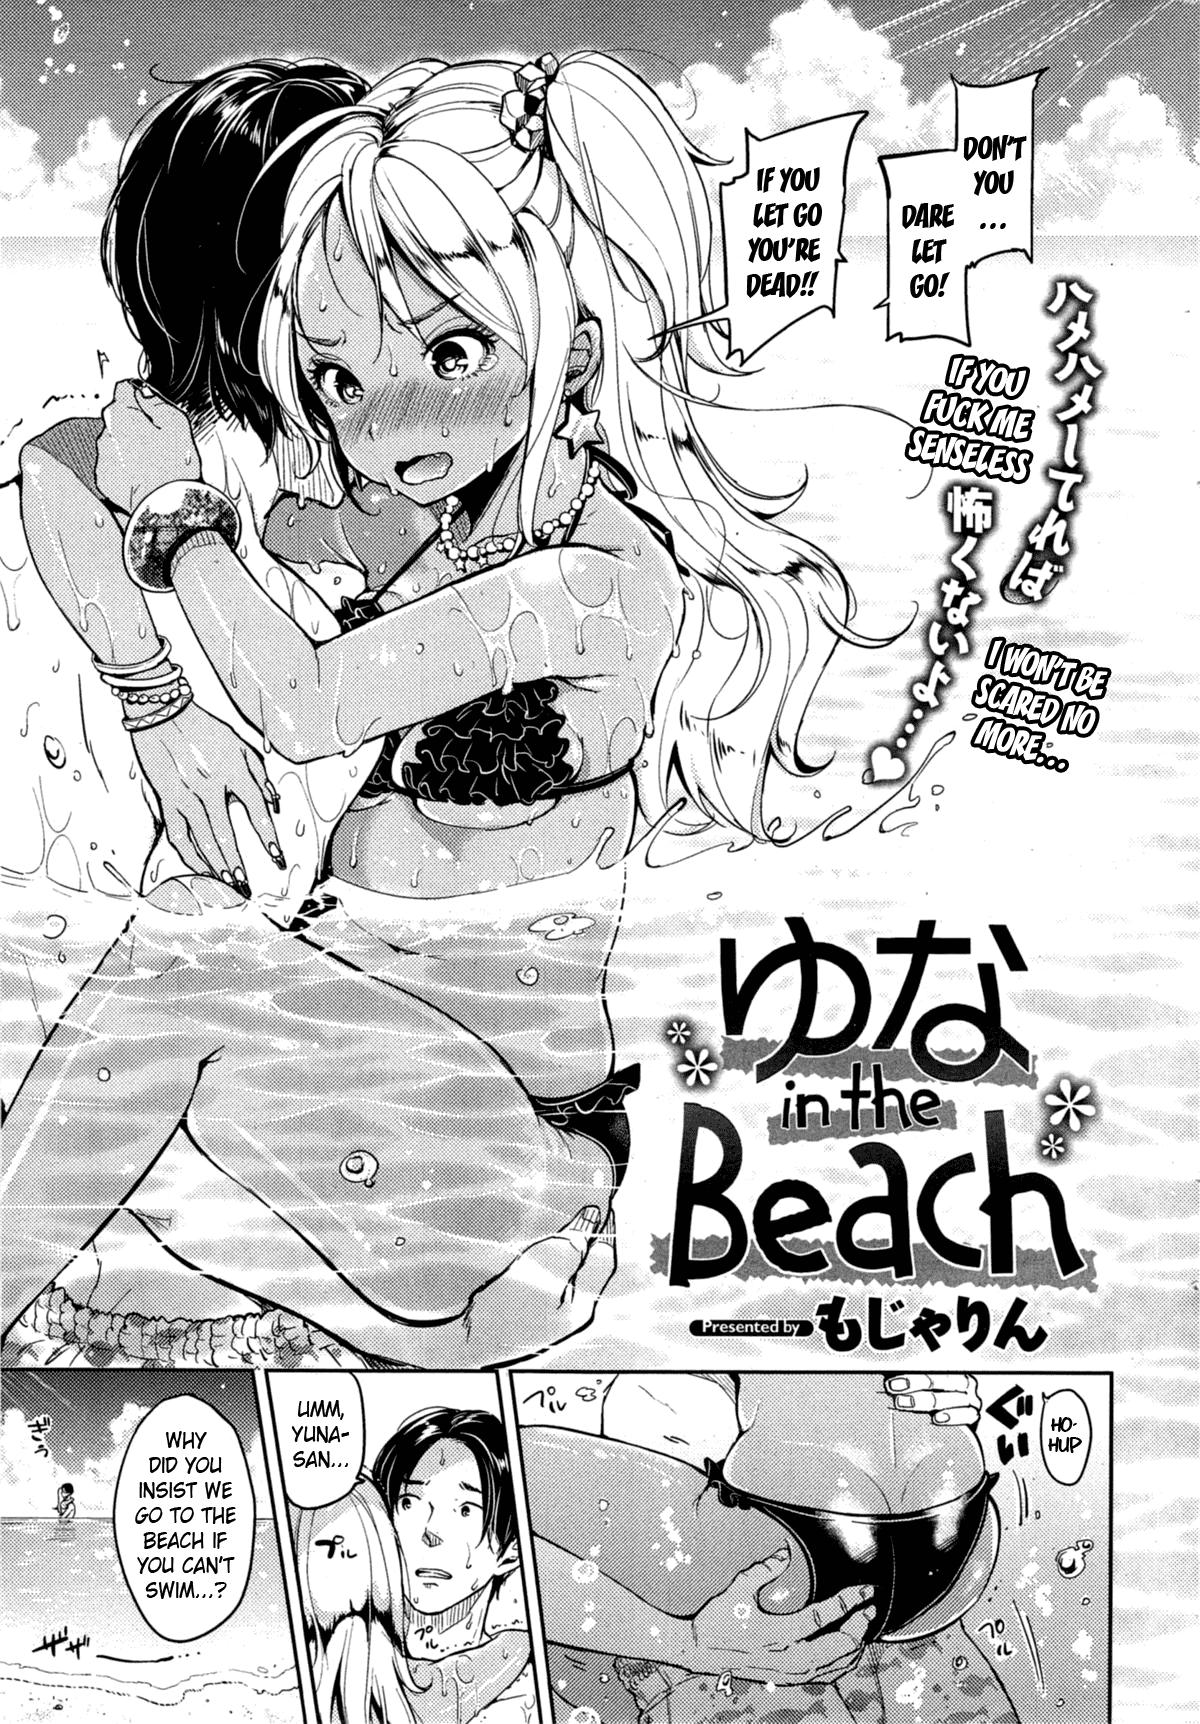 Yuna in the Beach 1